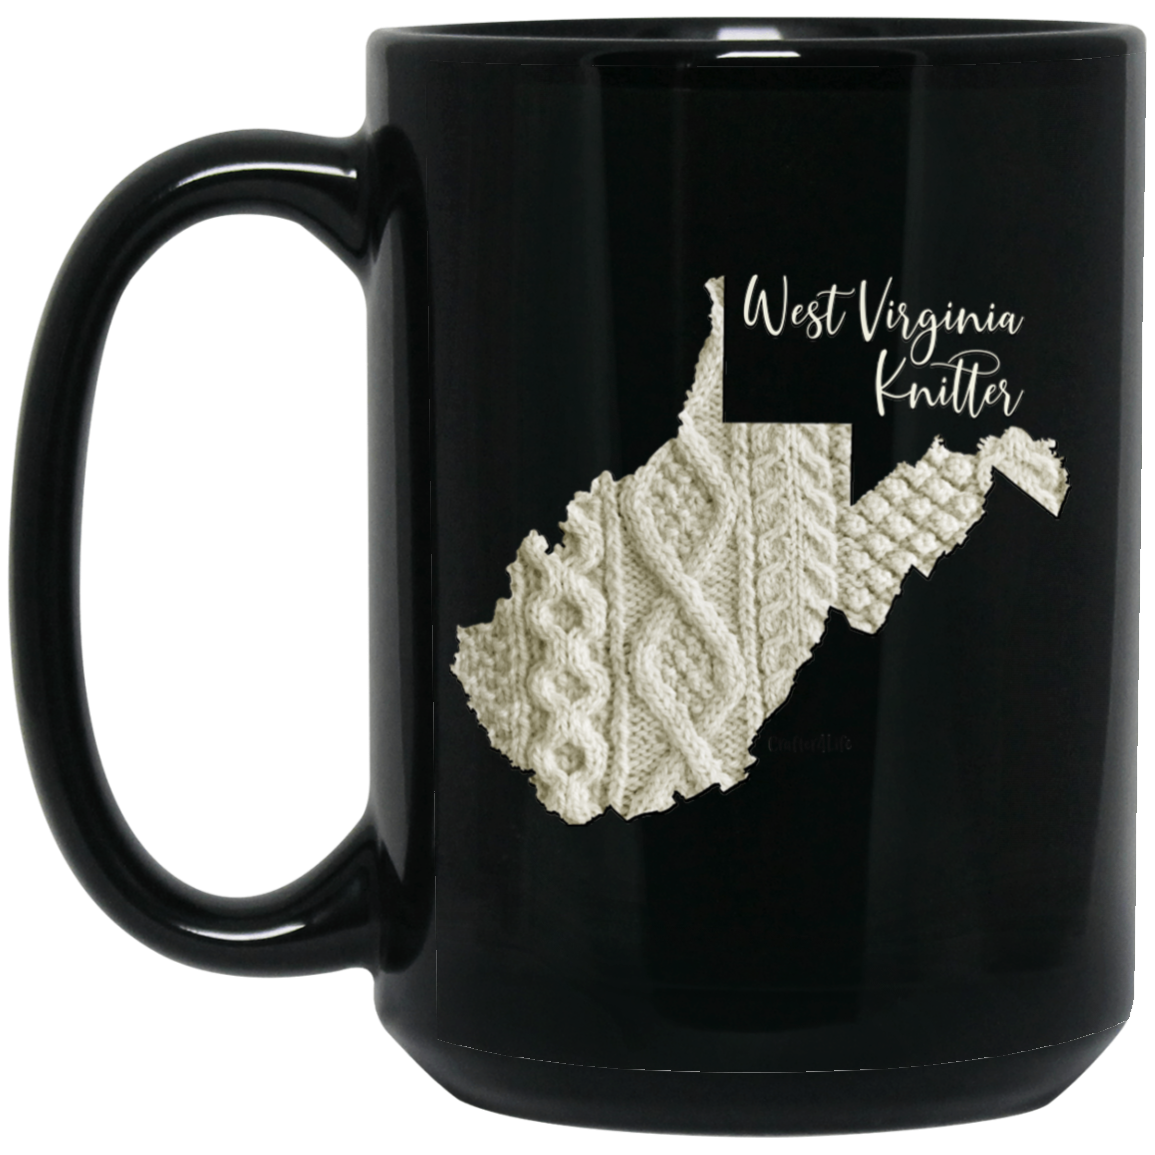 West Virginia Knitter Mugs